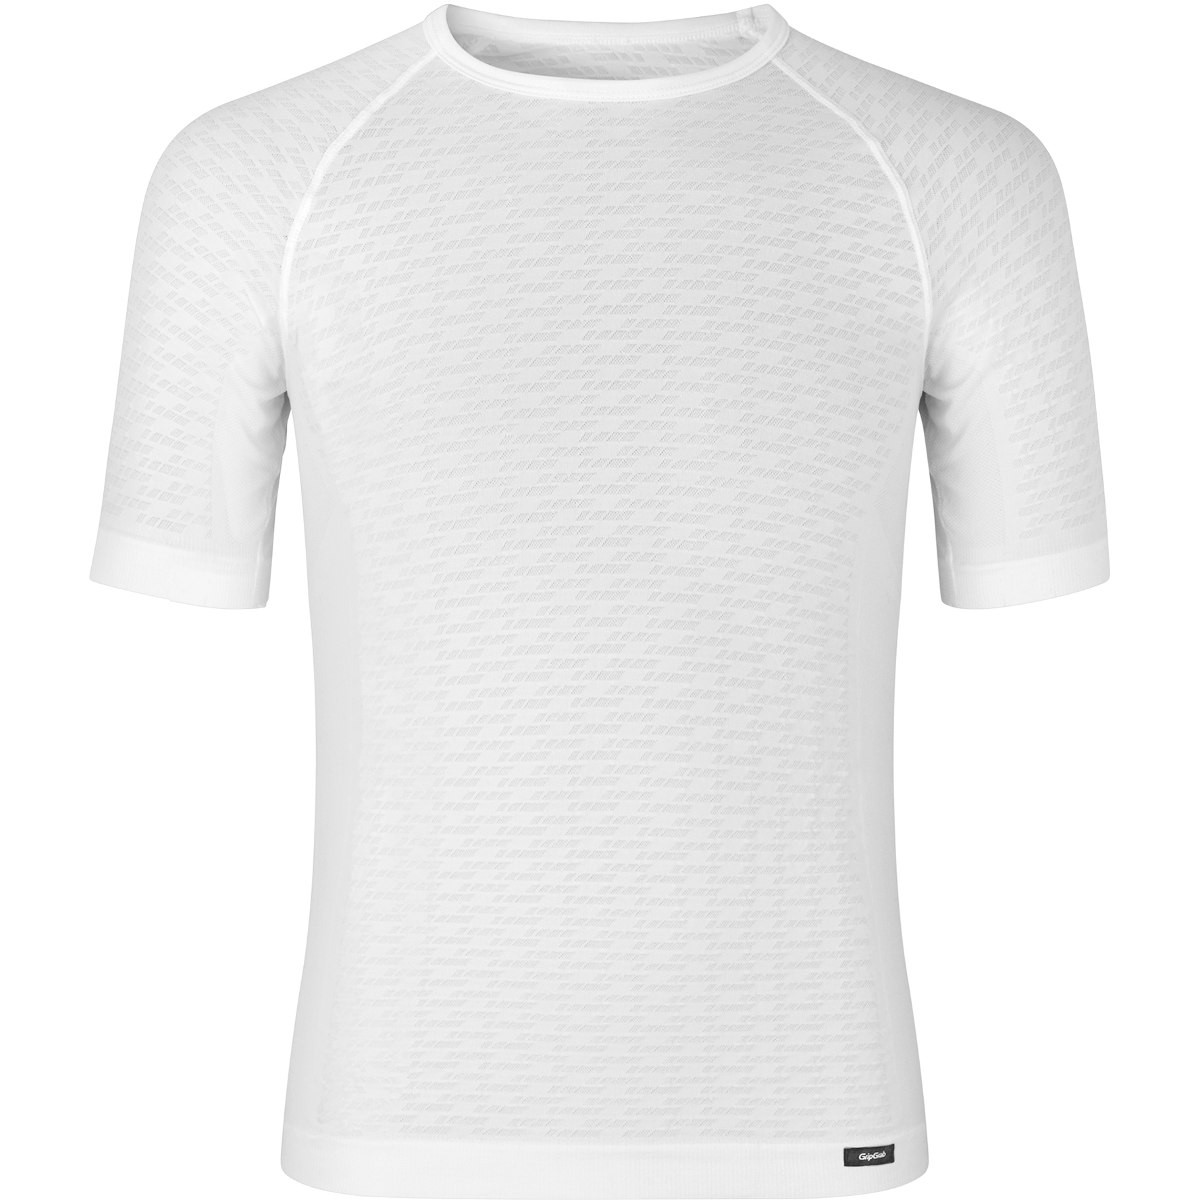 Produktbild von GripGrab Expert Seamless Kurzärmliges Unterhemd - White